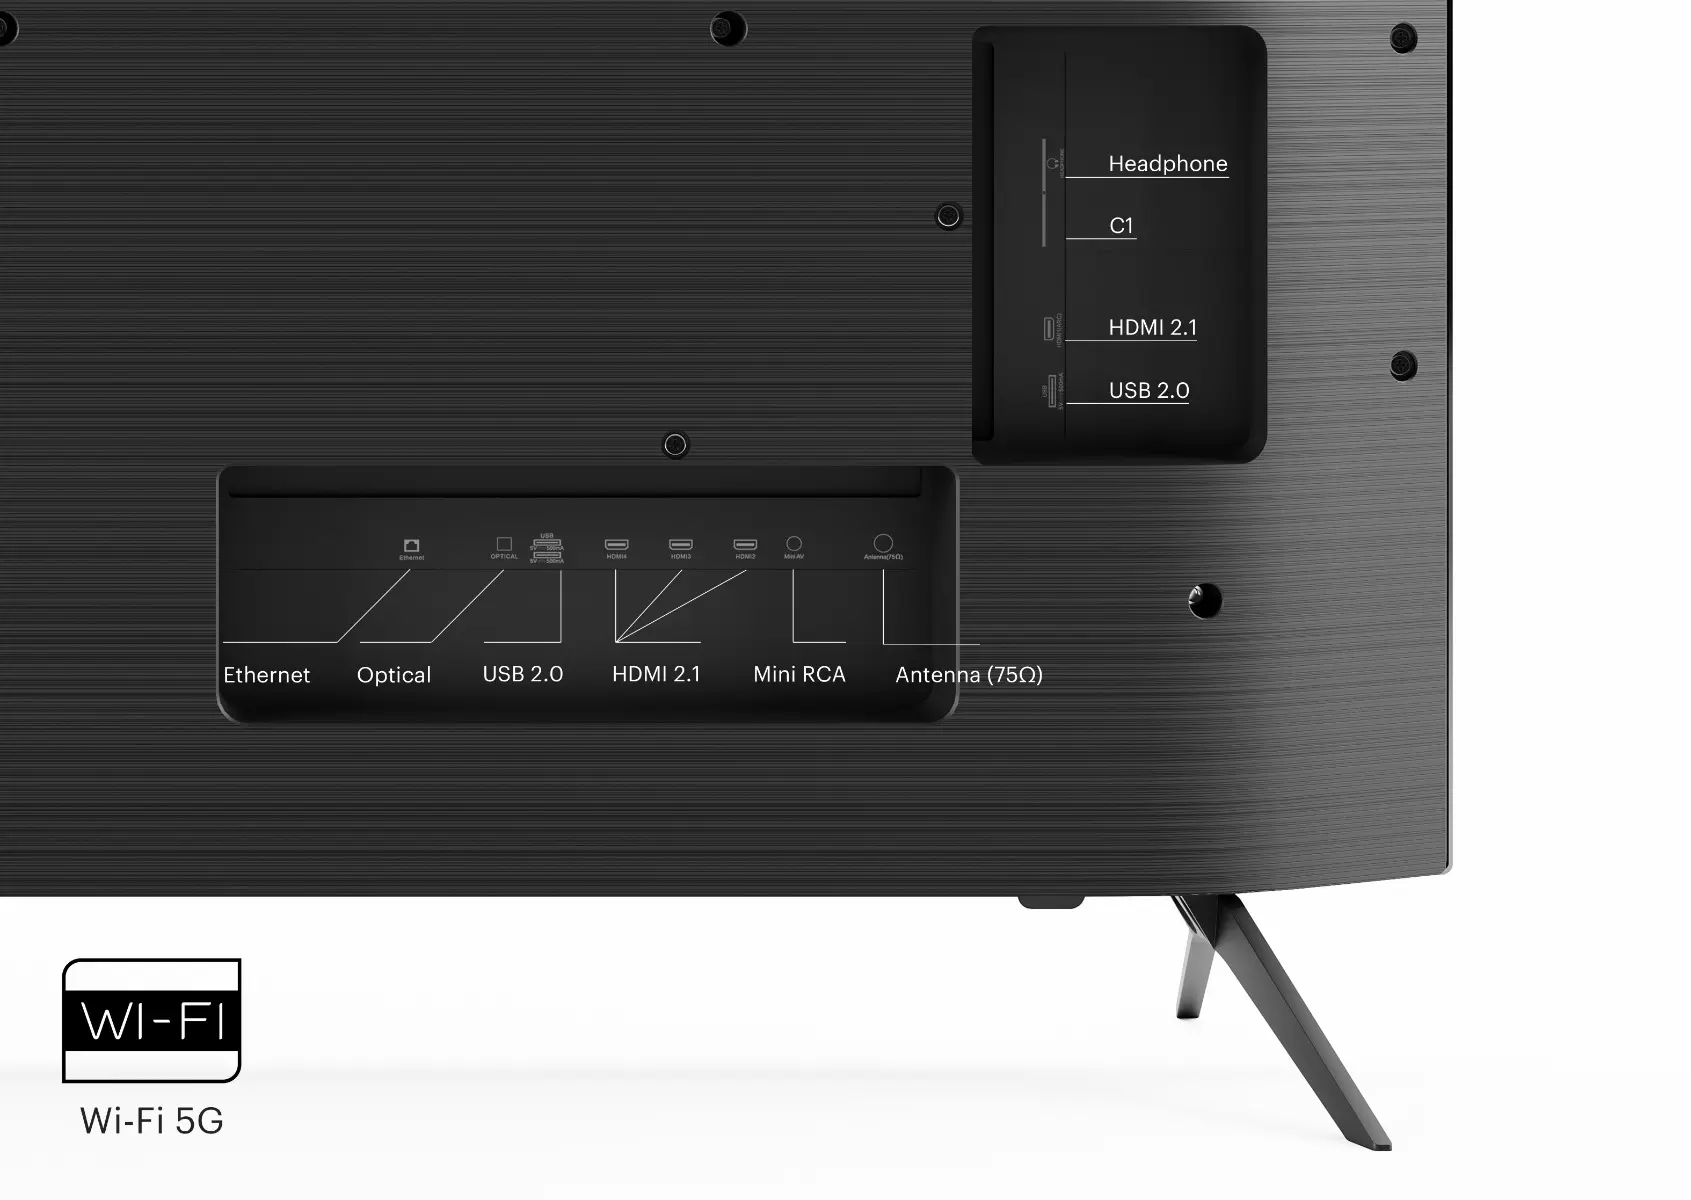 Televizor LED Smart, KIVI 55U750NB, 139 cm, 4K UHD, Android TV, Clasa G, Negru